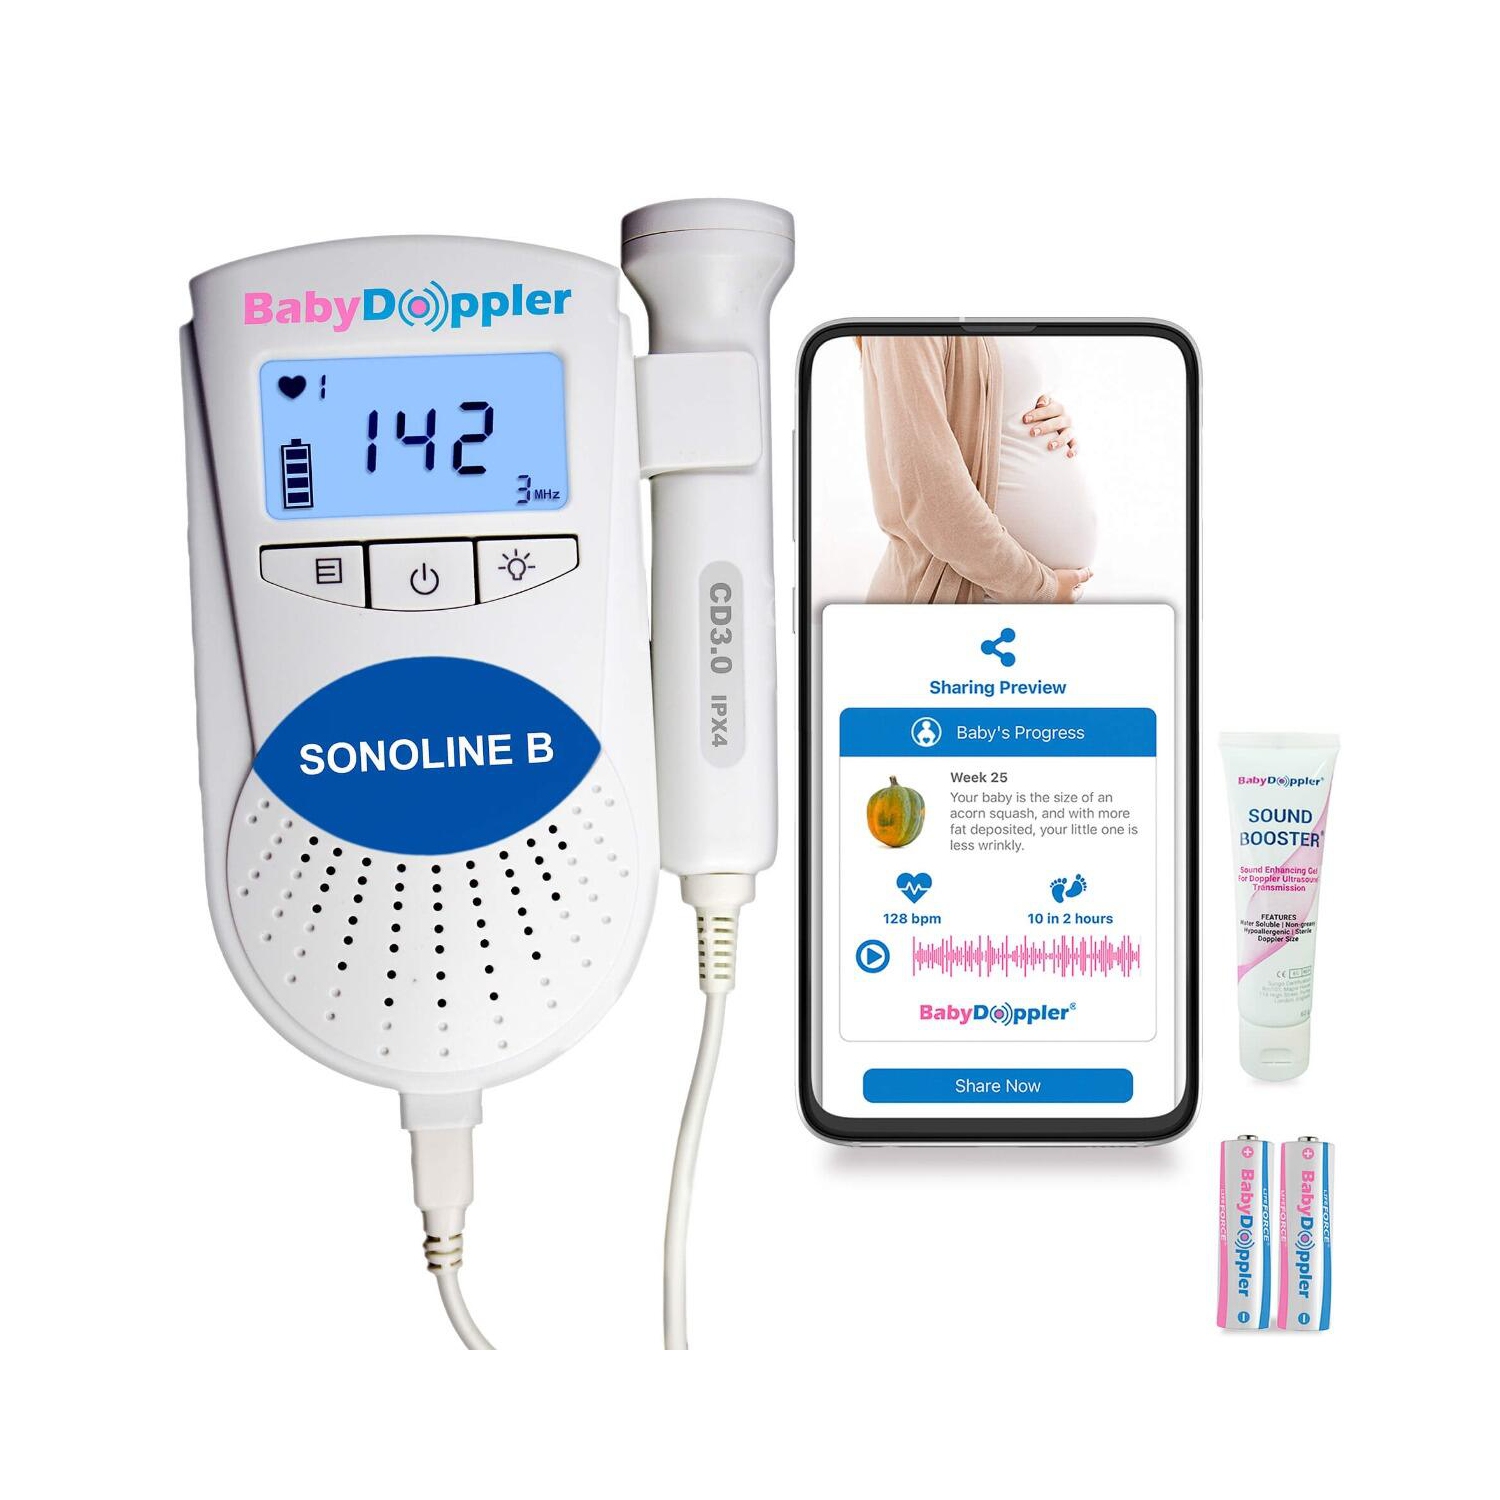 Sonoline B Blue with 3MHz Doppler Probe - The Authentic Fetal Doppler from Baby Doppler